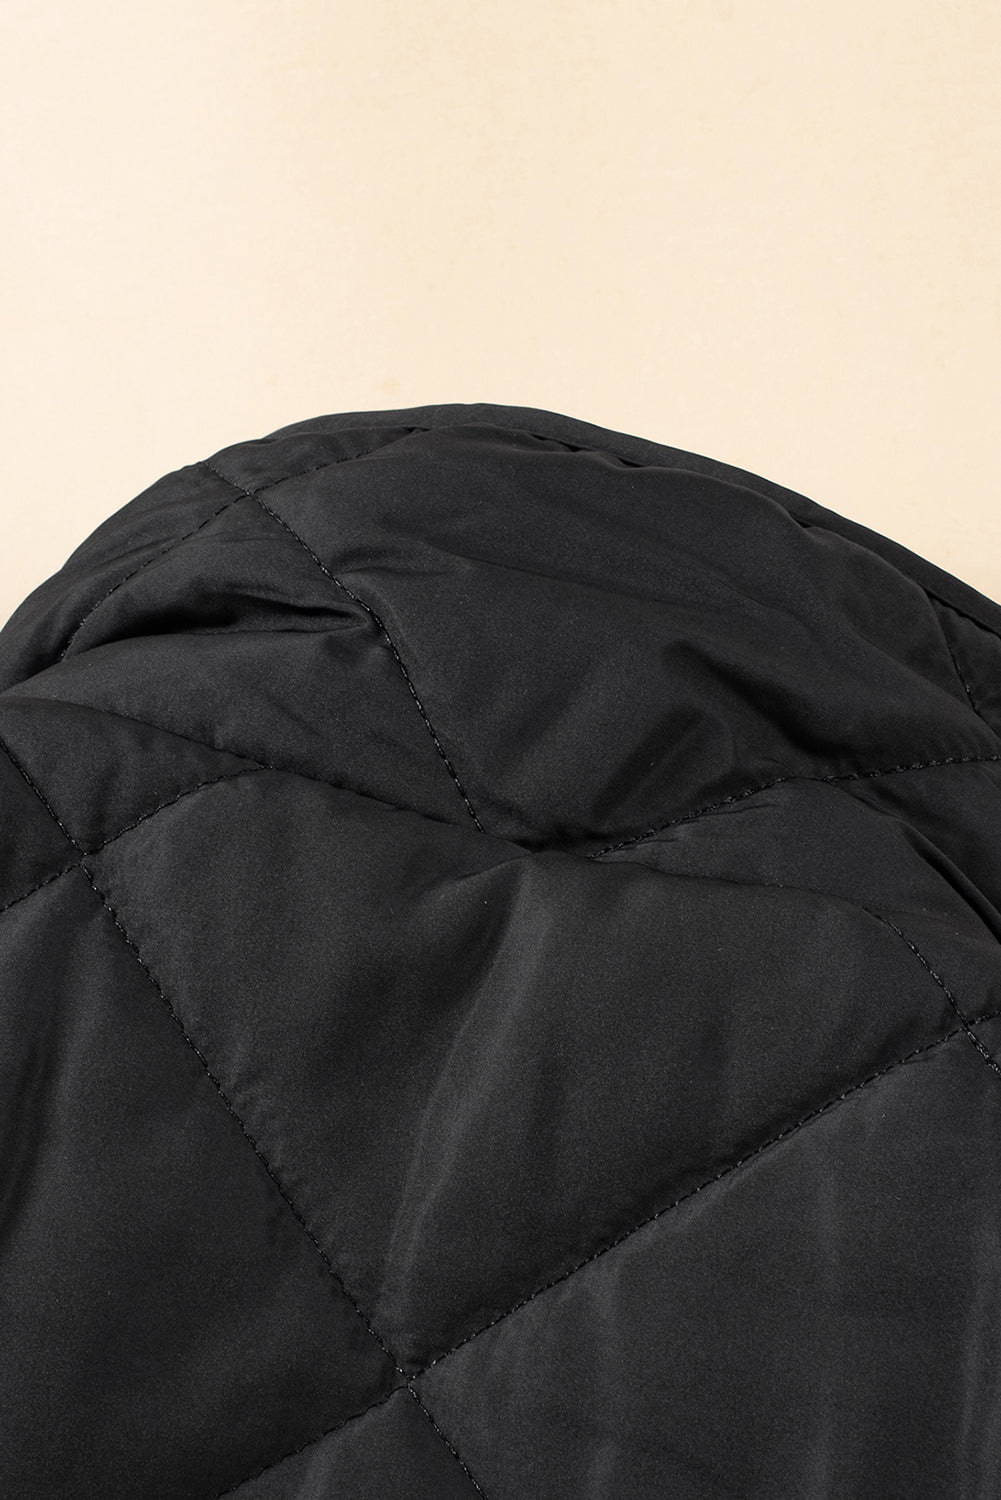 Black Fleece Lined Quilted Zip up Vest Coat